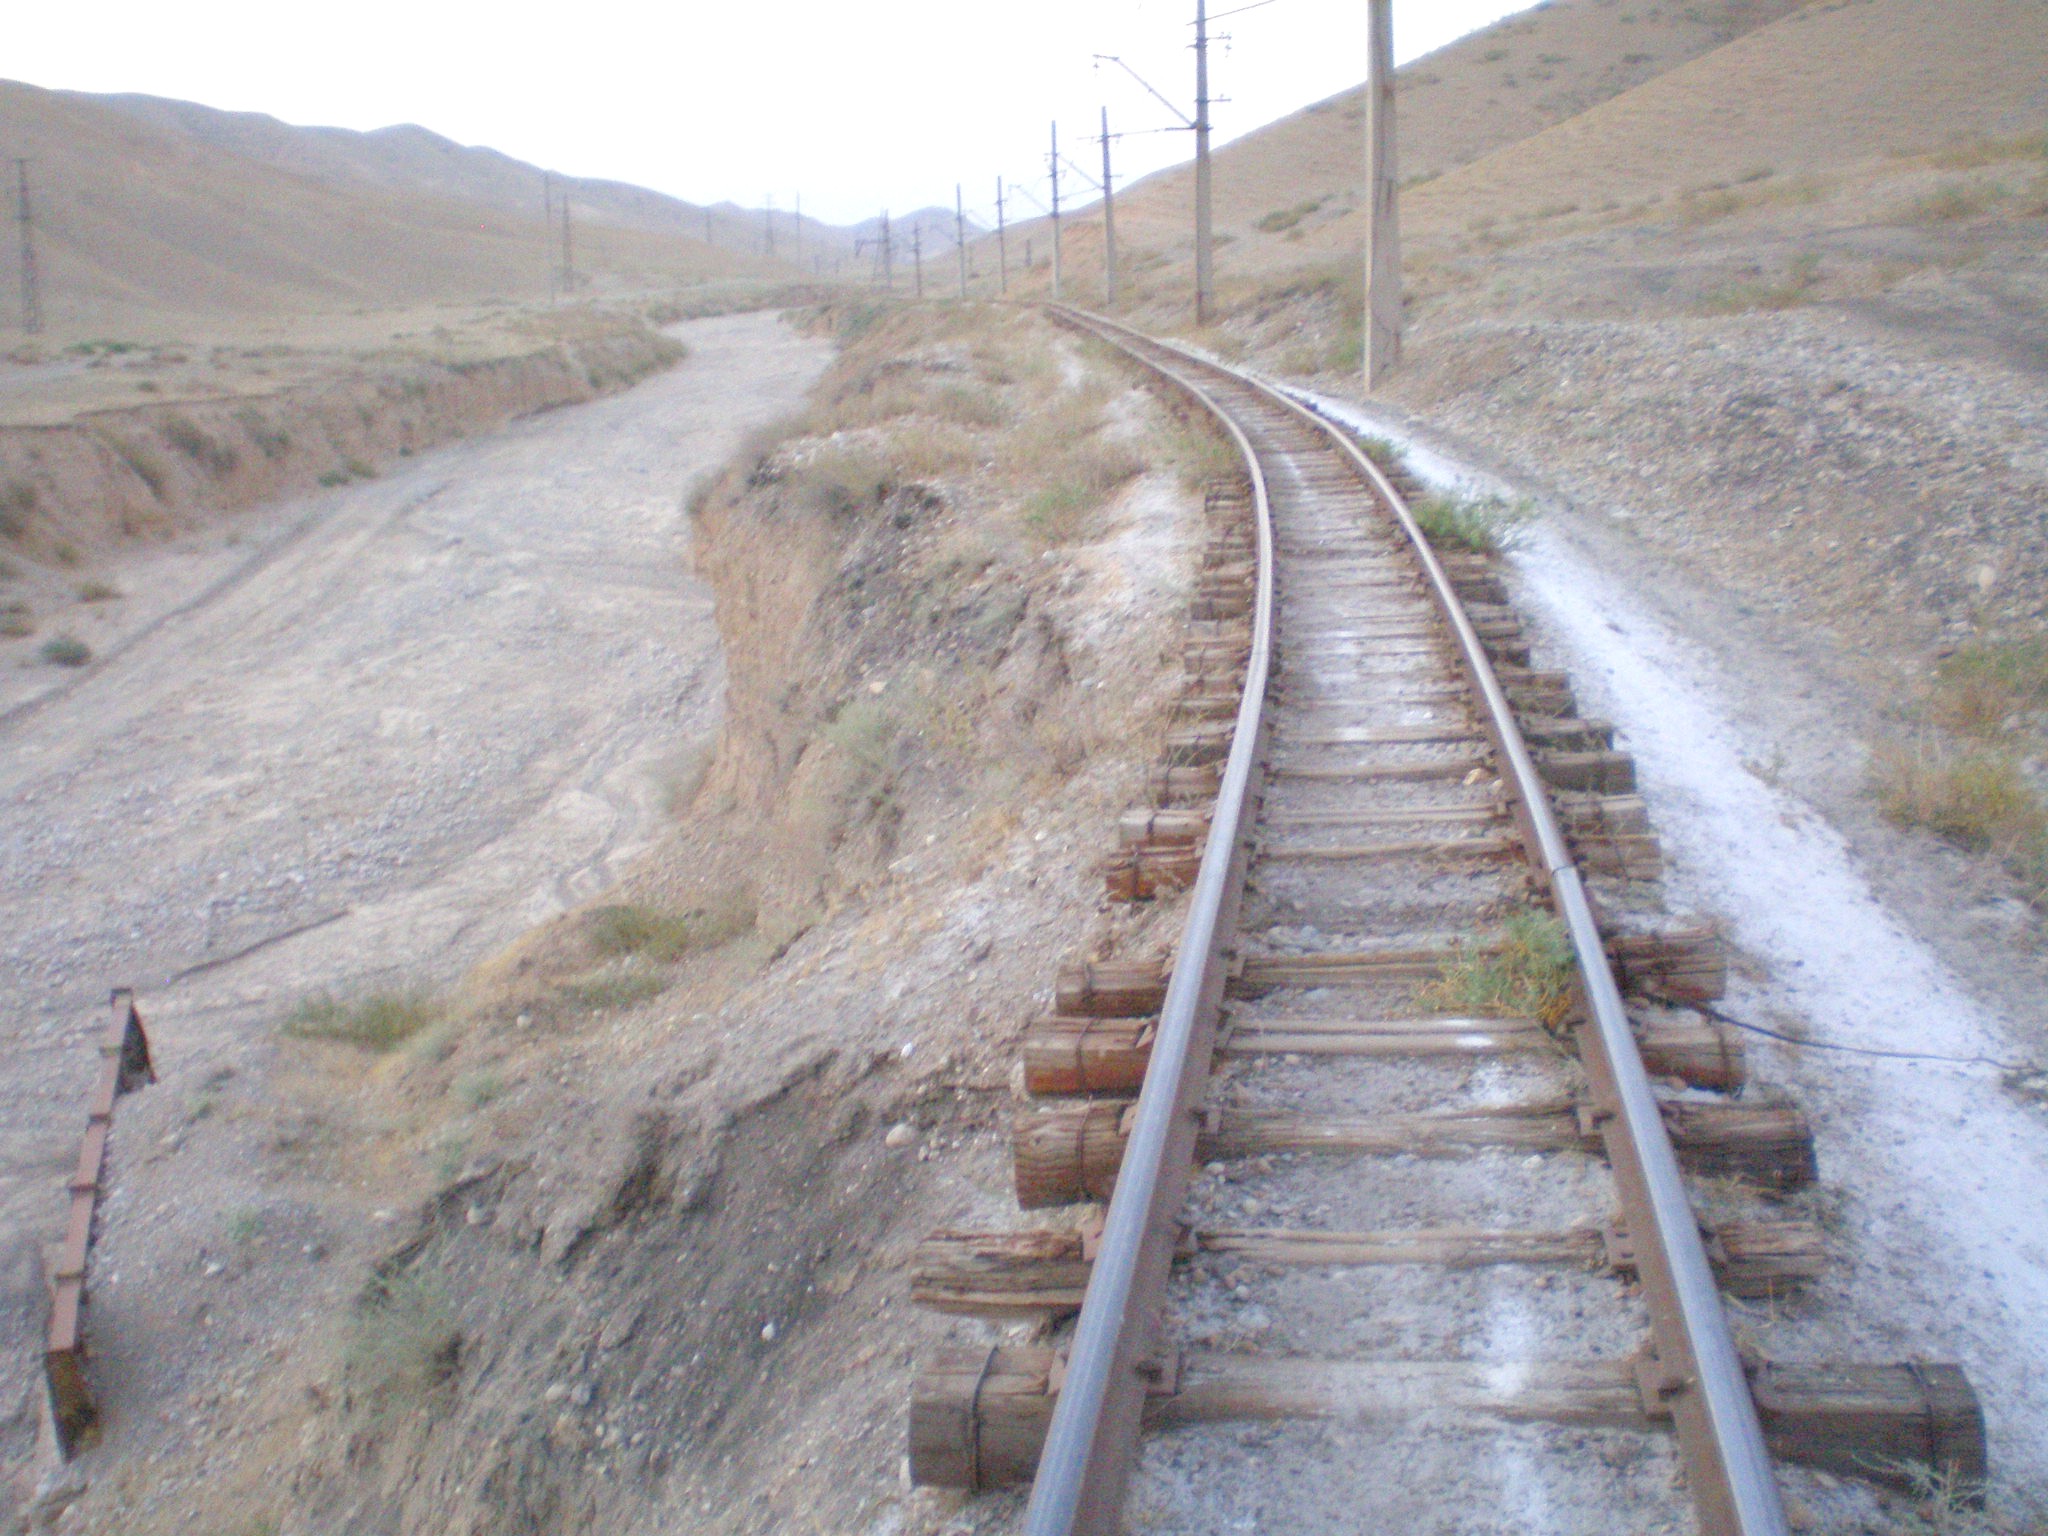 Сулюктинская узкоколейная железная дорога  —  фотографии, сделанные в 2008 году (часть 32)